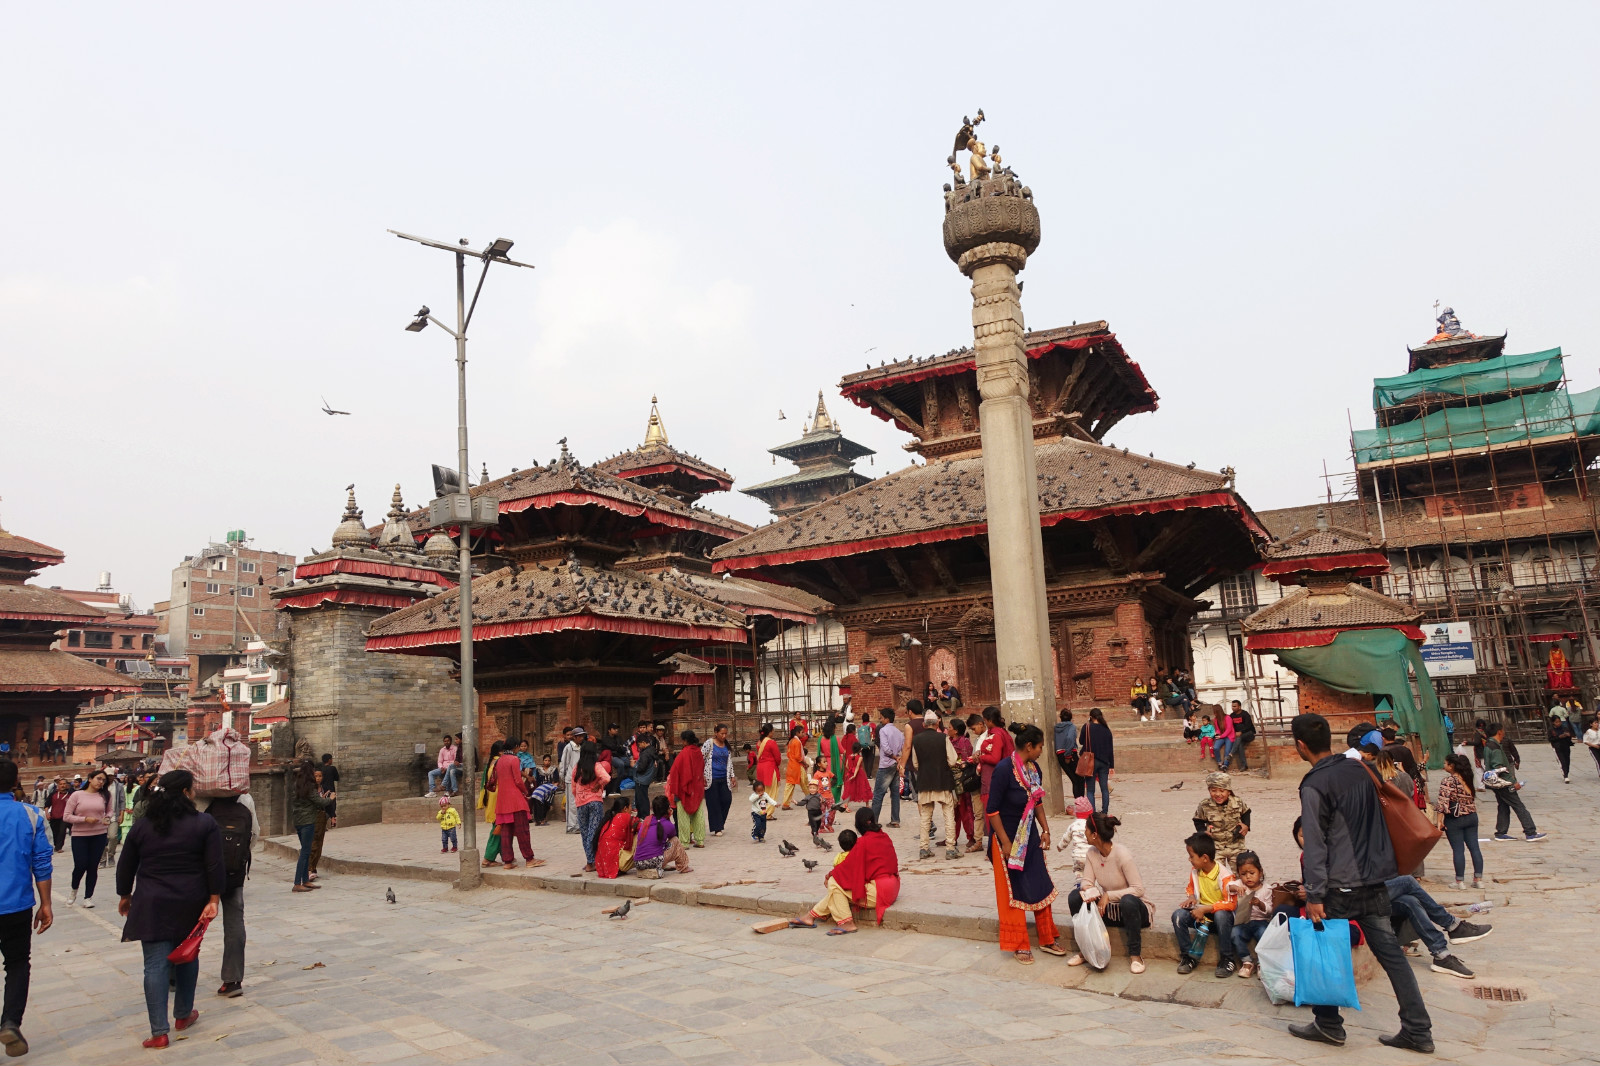 尼泊尔最值得一去的城市,是首都看起来却像中国小县城